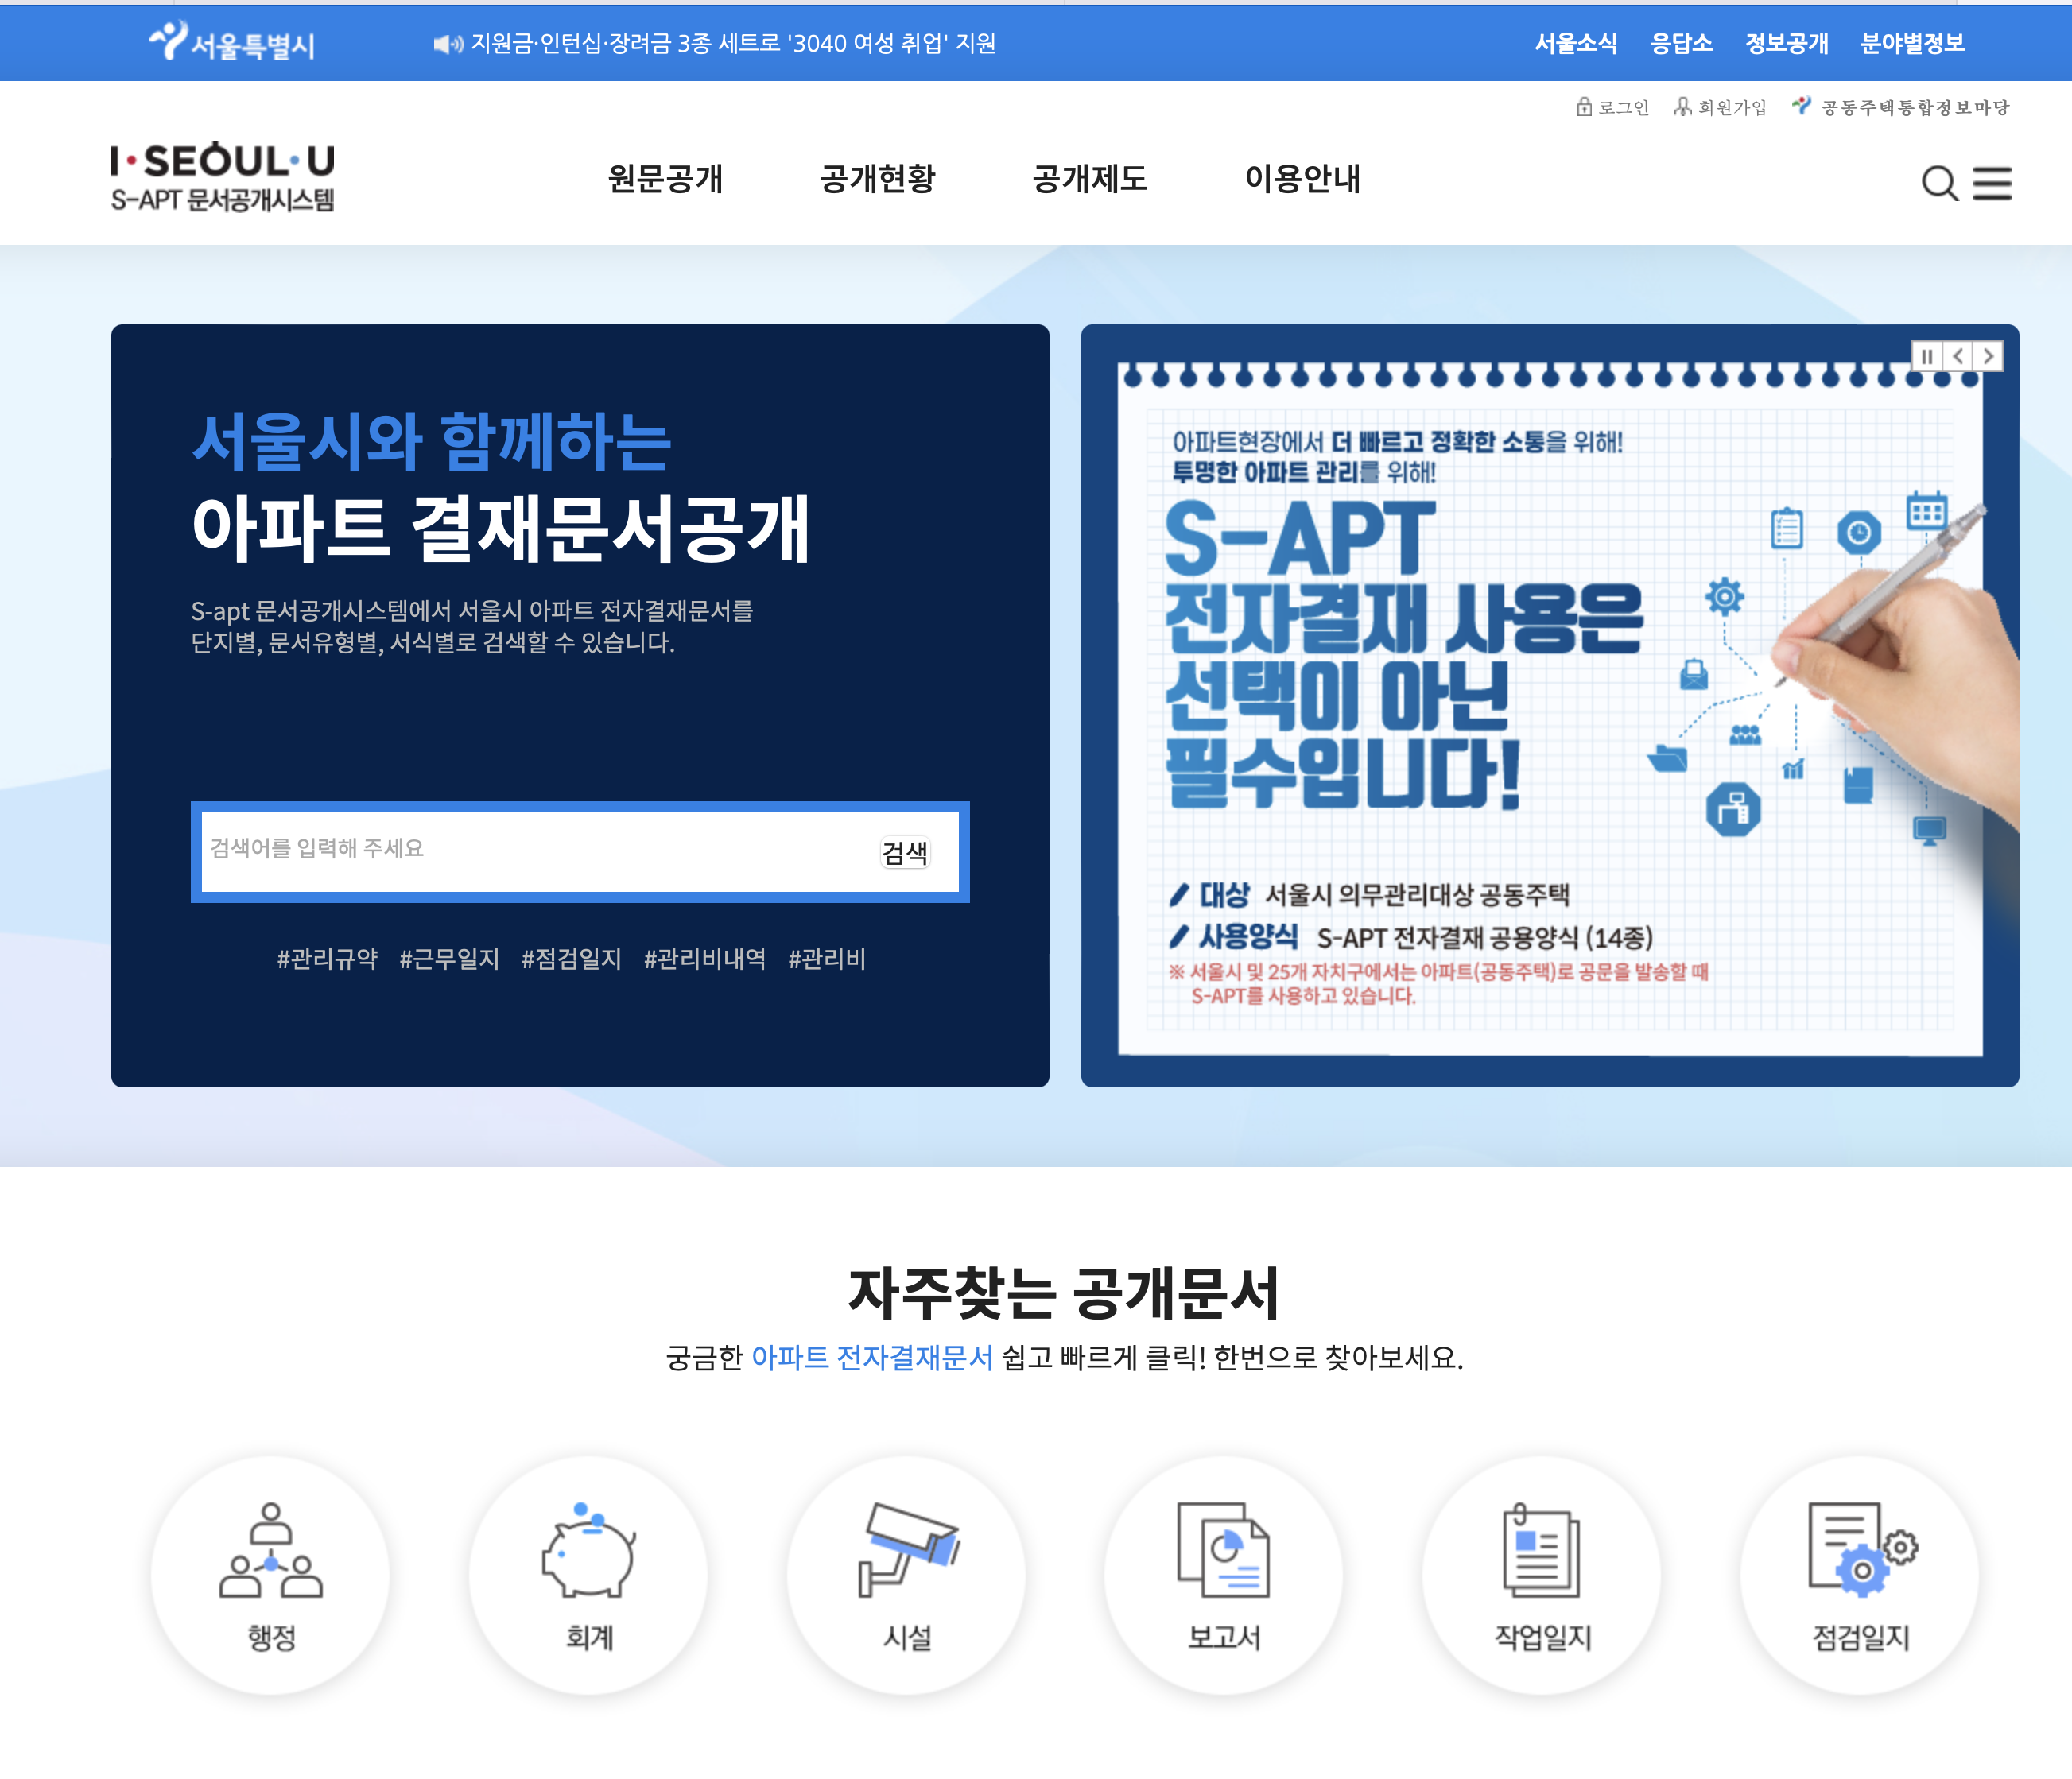 서울특별시 S-apt 문서공개시스템 (s-apt.seoul.go.kr)